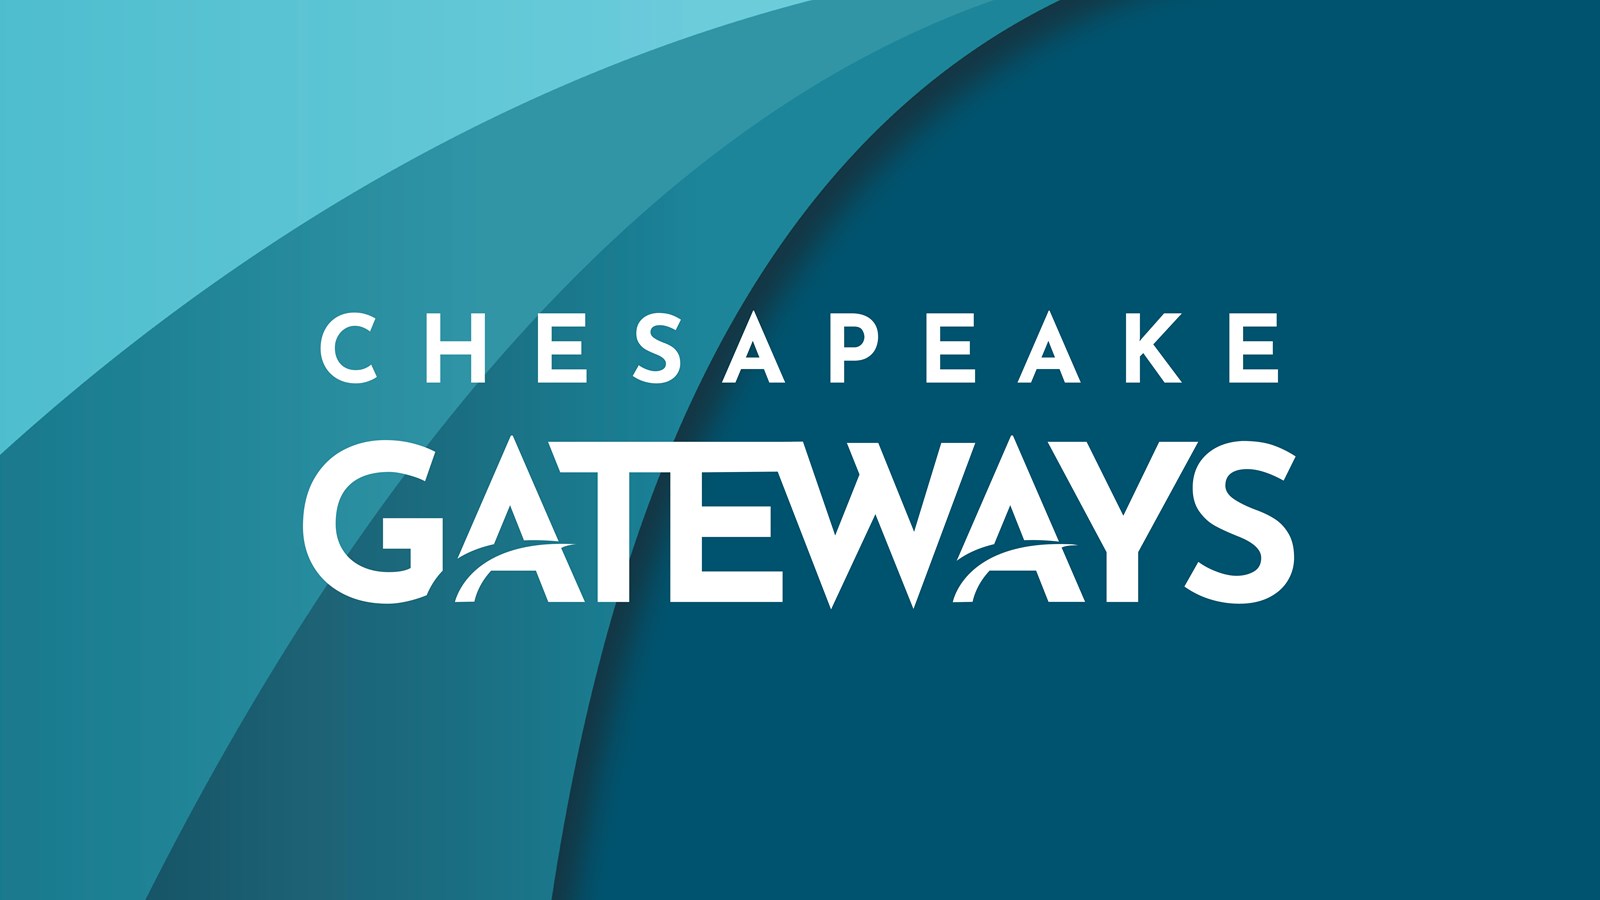 Chesapeake Gateways written in white over a blue background.